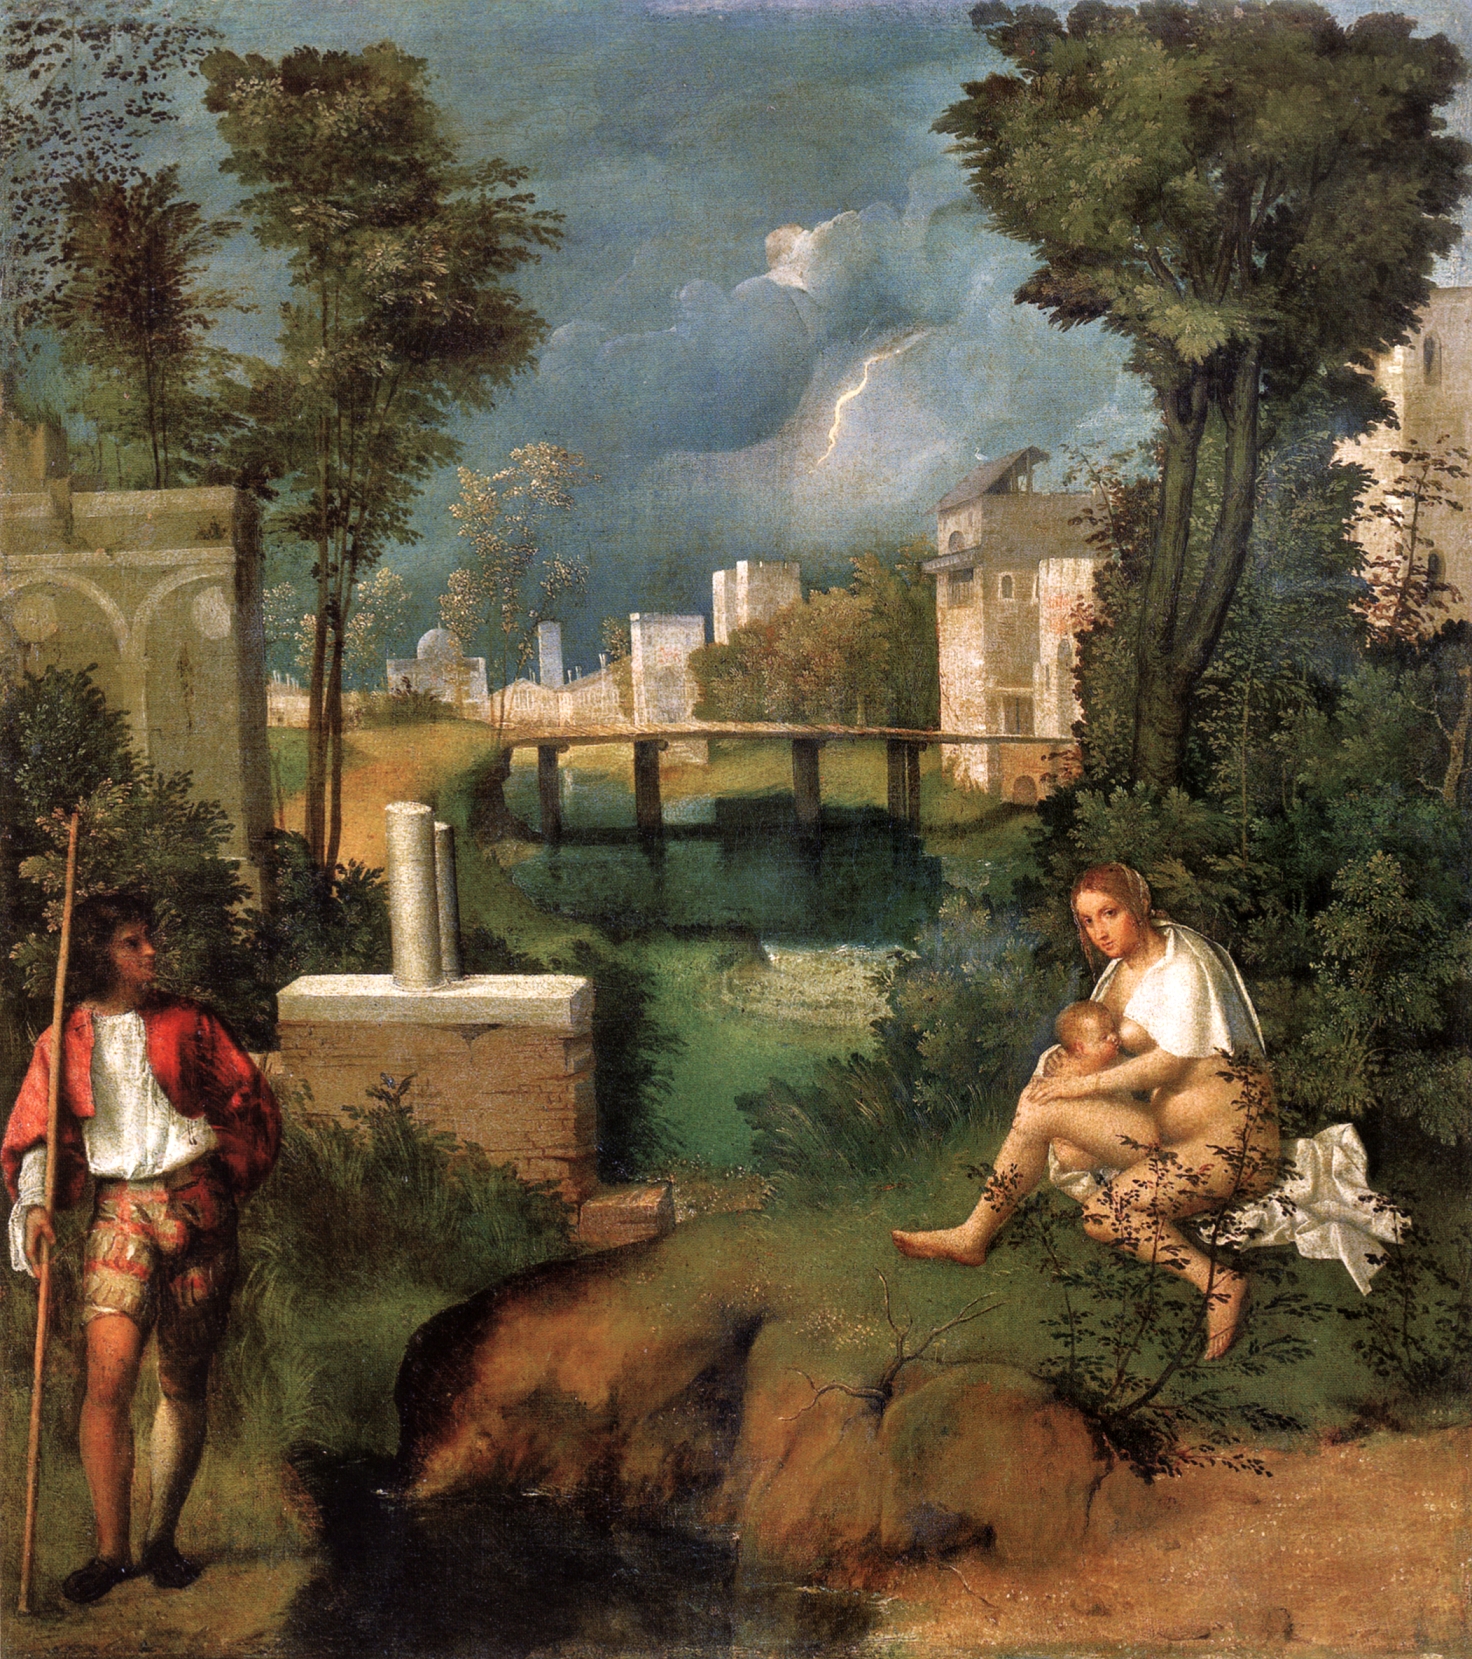 La tempestad by  Giorgione - c. 1508 Gallerie dell'Accademia